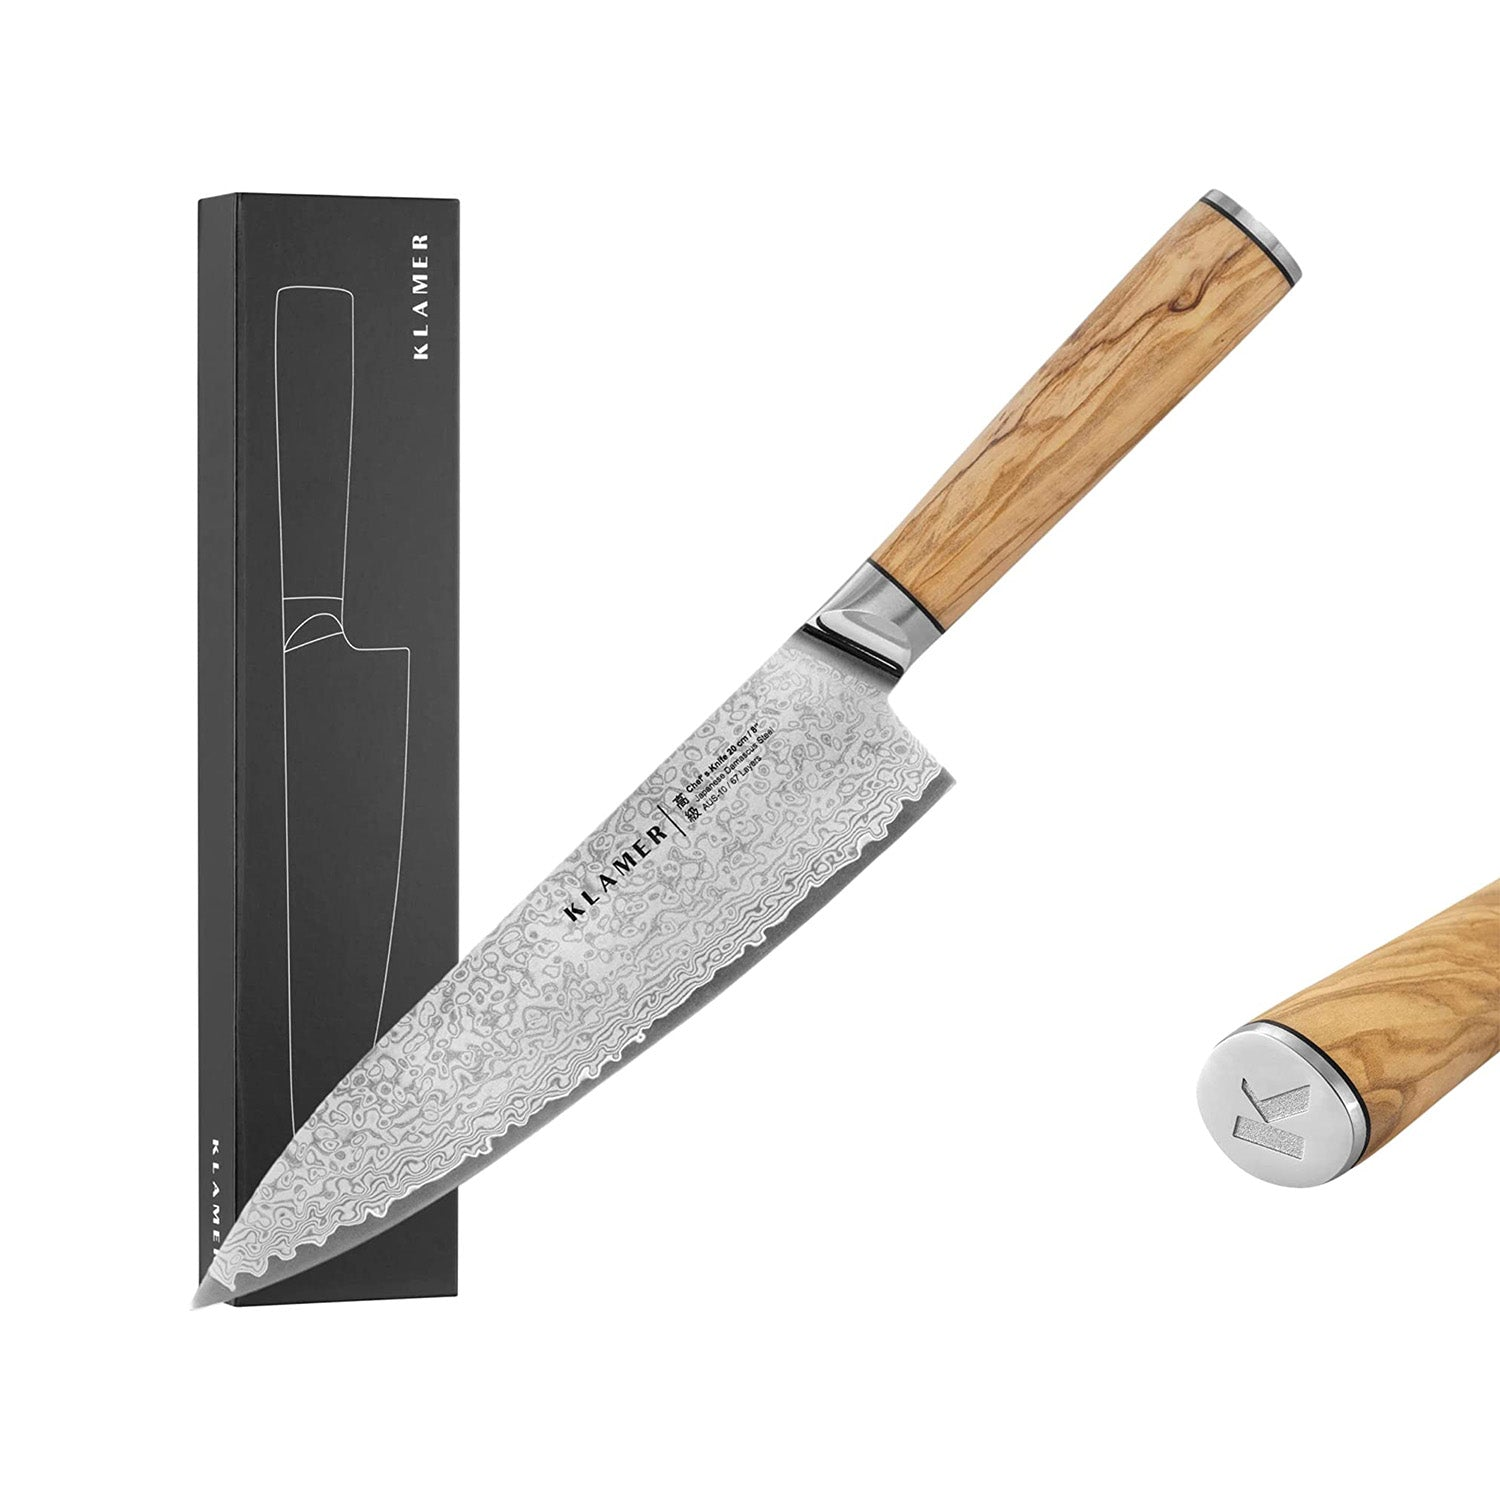 KLAMER Damast Chefmesser 20cm Olivenholz Messer mit